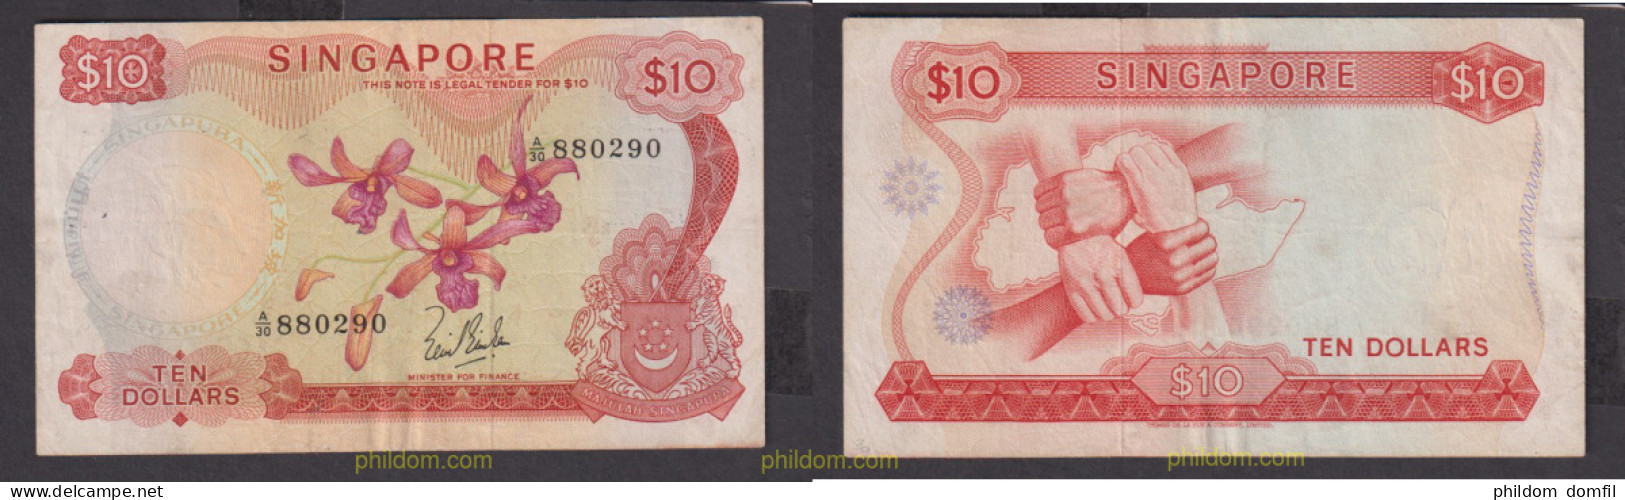 2401 SINGAPUR 1967 10 DOLLARS SINGAPORE 1967 - Singapur